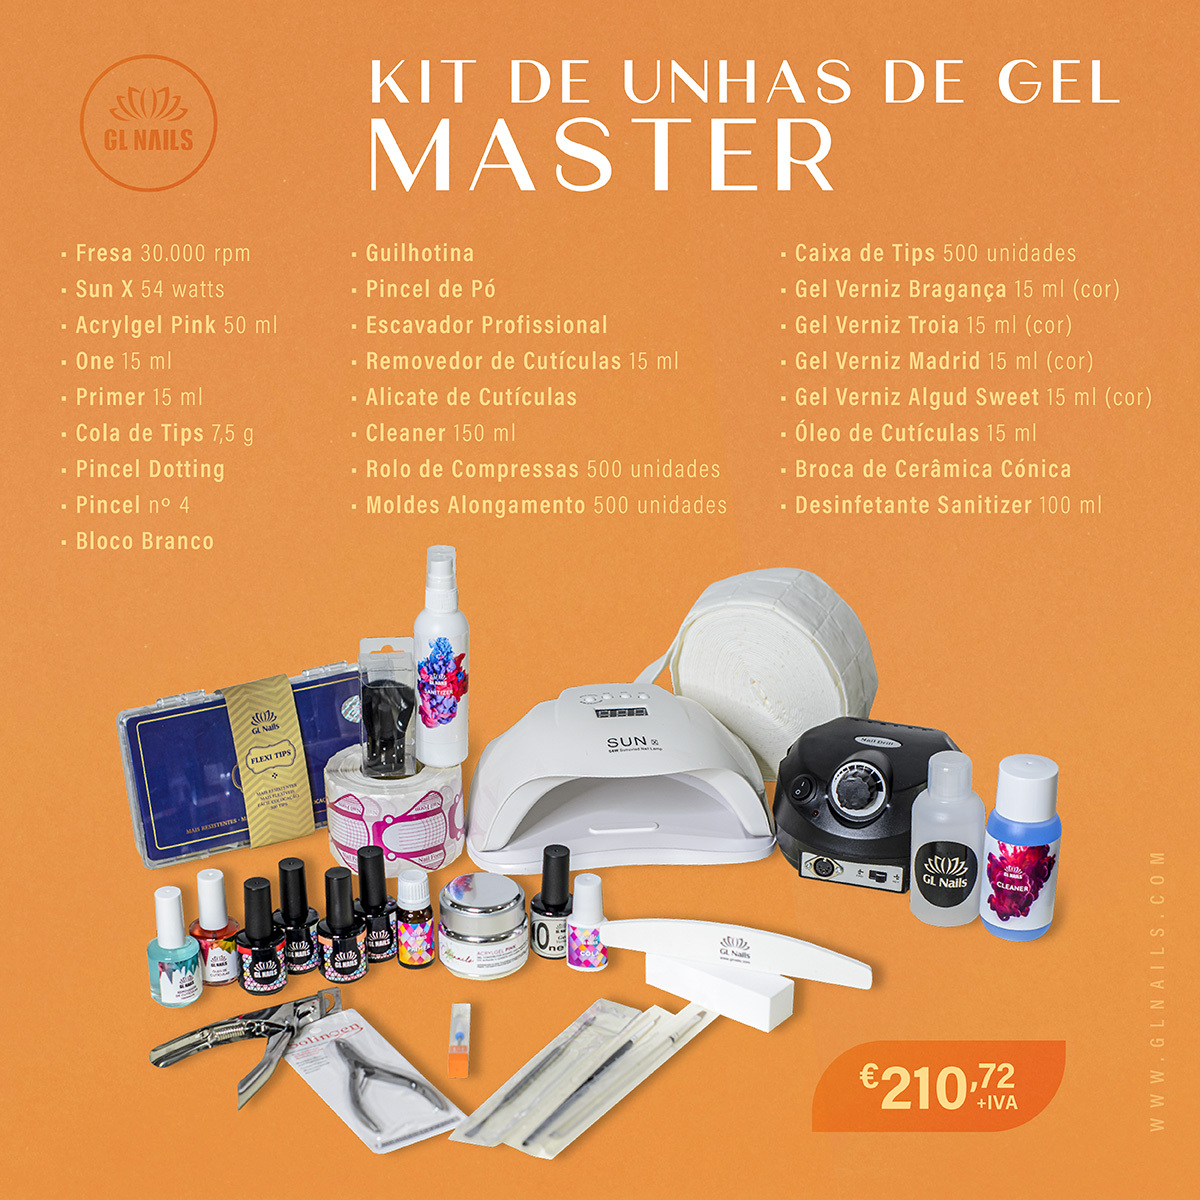 Kit de Unhas de Gel Master - Click Image to Close